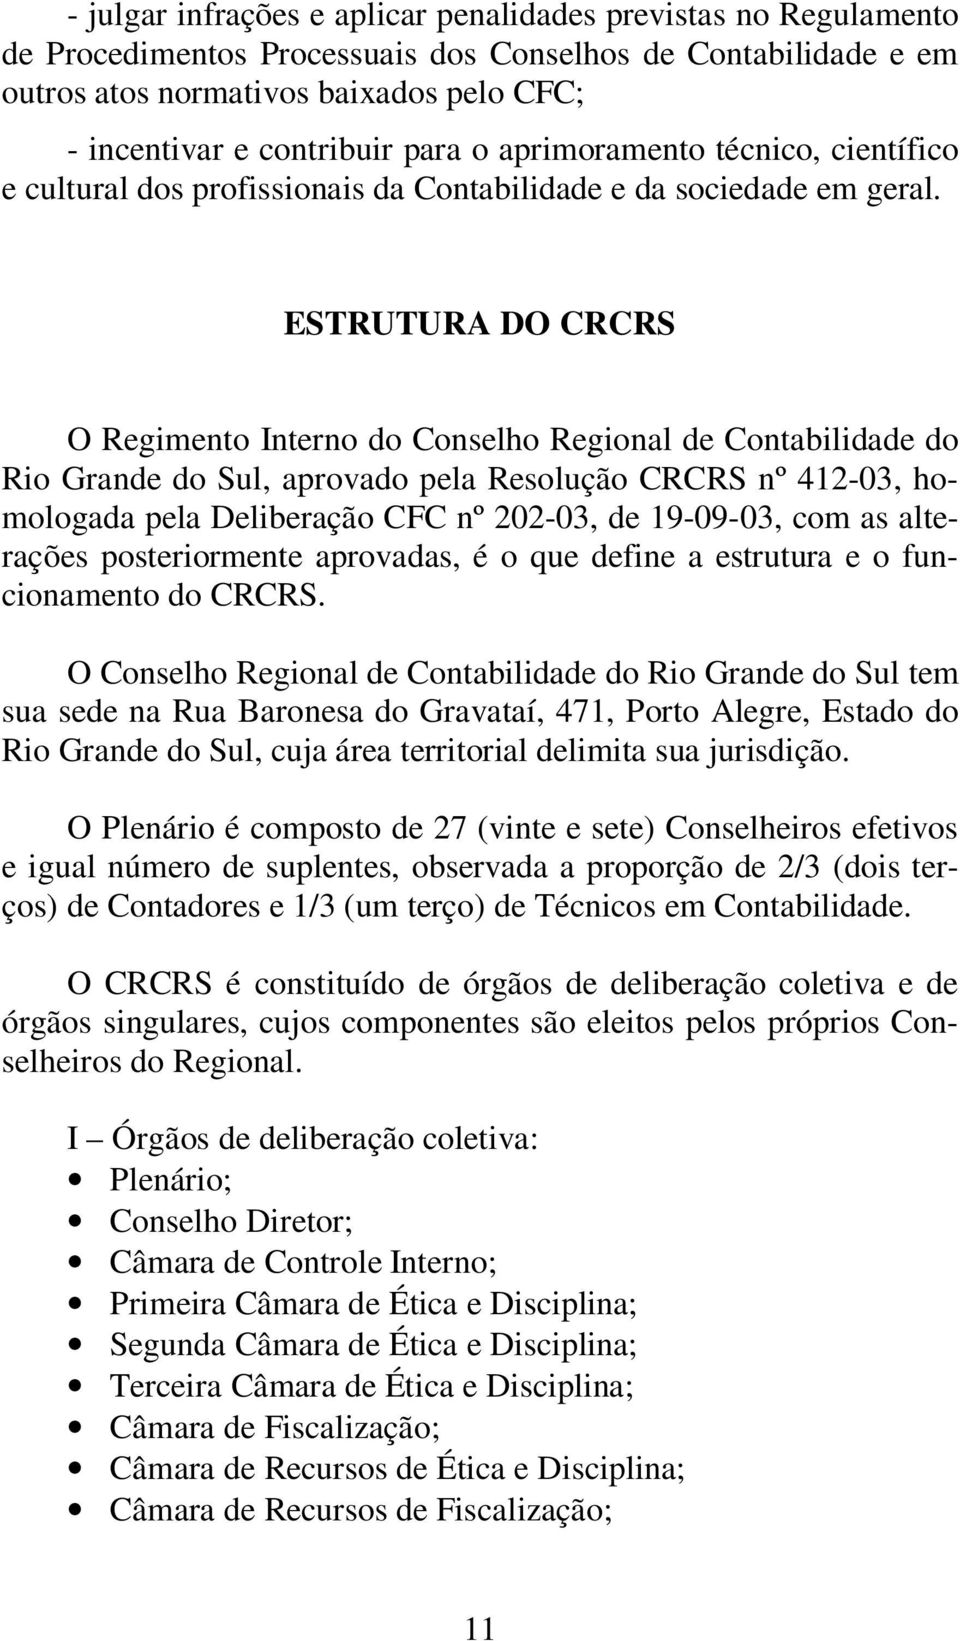 ESTRUTURA DO CRCRS O Regimento Interno do Conselho Regional de Contabilidade do Rio Grande do Sul, aprovado pela Resolução CRCRS nº 412-03, homologada pela Deliberação CFC nº 202-03, de 19-09-03, com